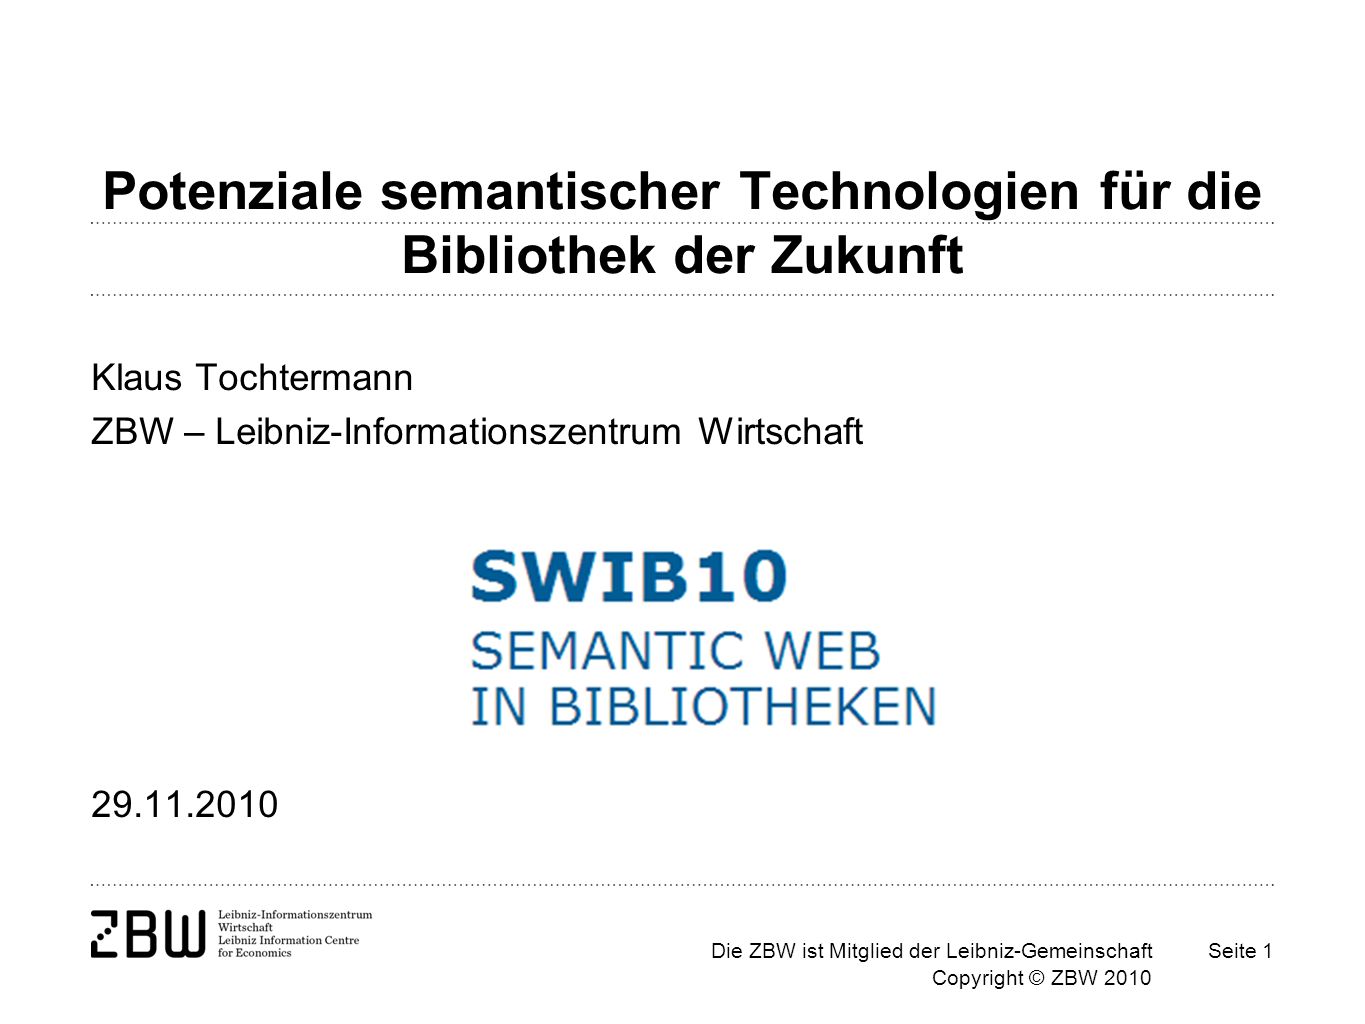 Die ZBW ist Mitglied der Leibniz-Gemeinschaft Copyright © ZBW 2010 Seite 1 Potenziale semantischer Technologien für die Bibliothek der Zukunft Klaus Tochtermann ZBW – Leibniz-Informationszentrum Wirtschaft